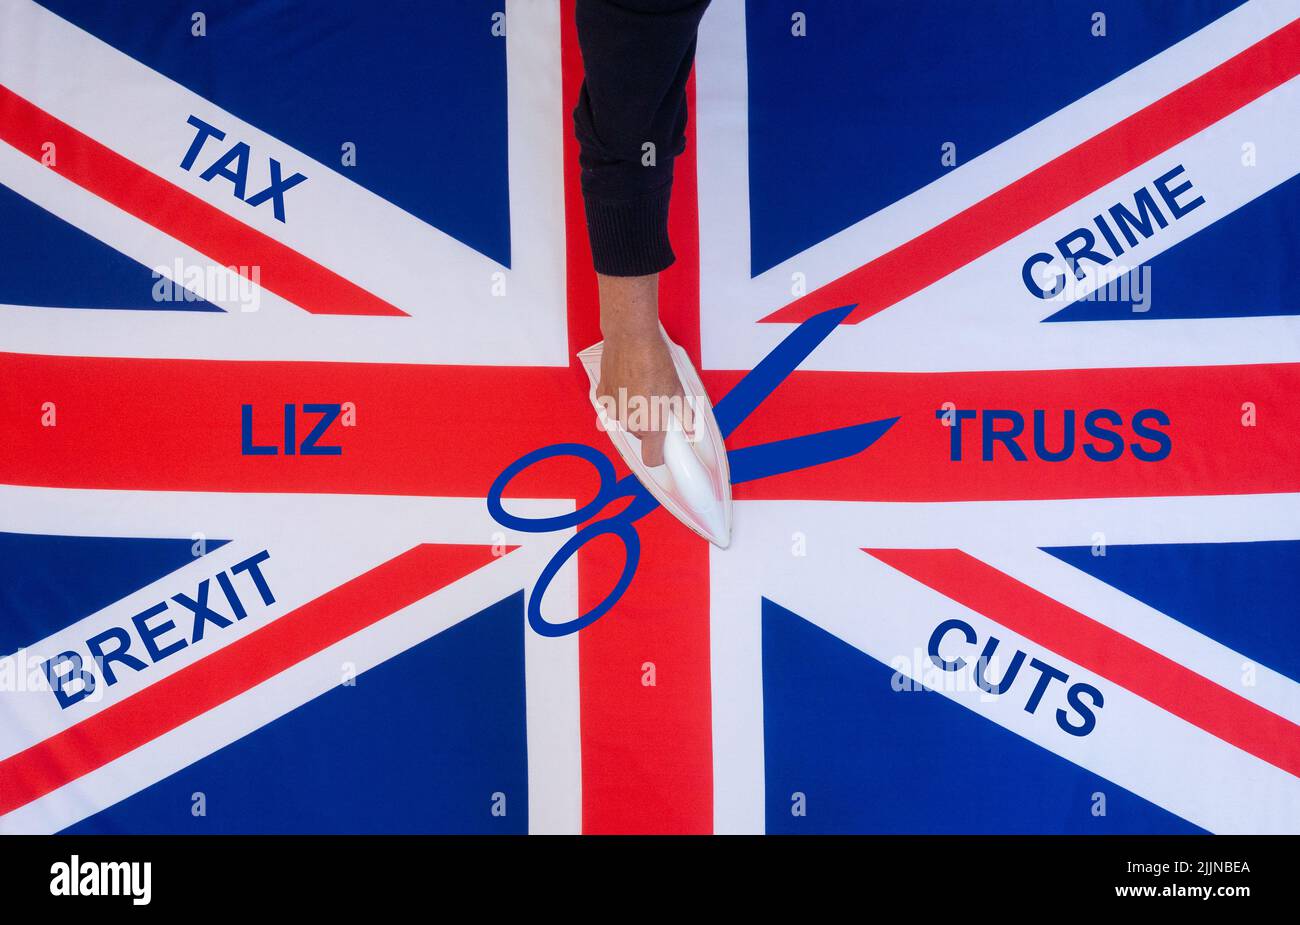 Liz Truss, recortes de impuestos, Brexit, reducción de la delincuencia... tory, concepto de campaña de liderazgo del partido conservador. Foto de stock